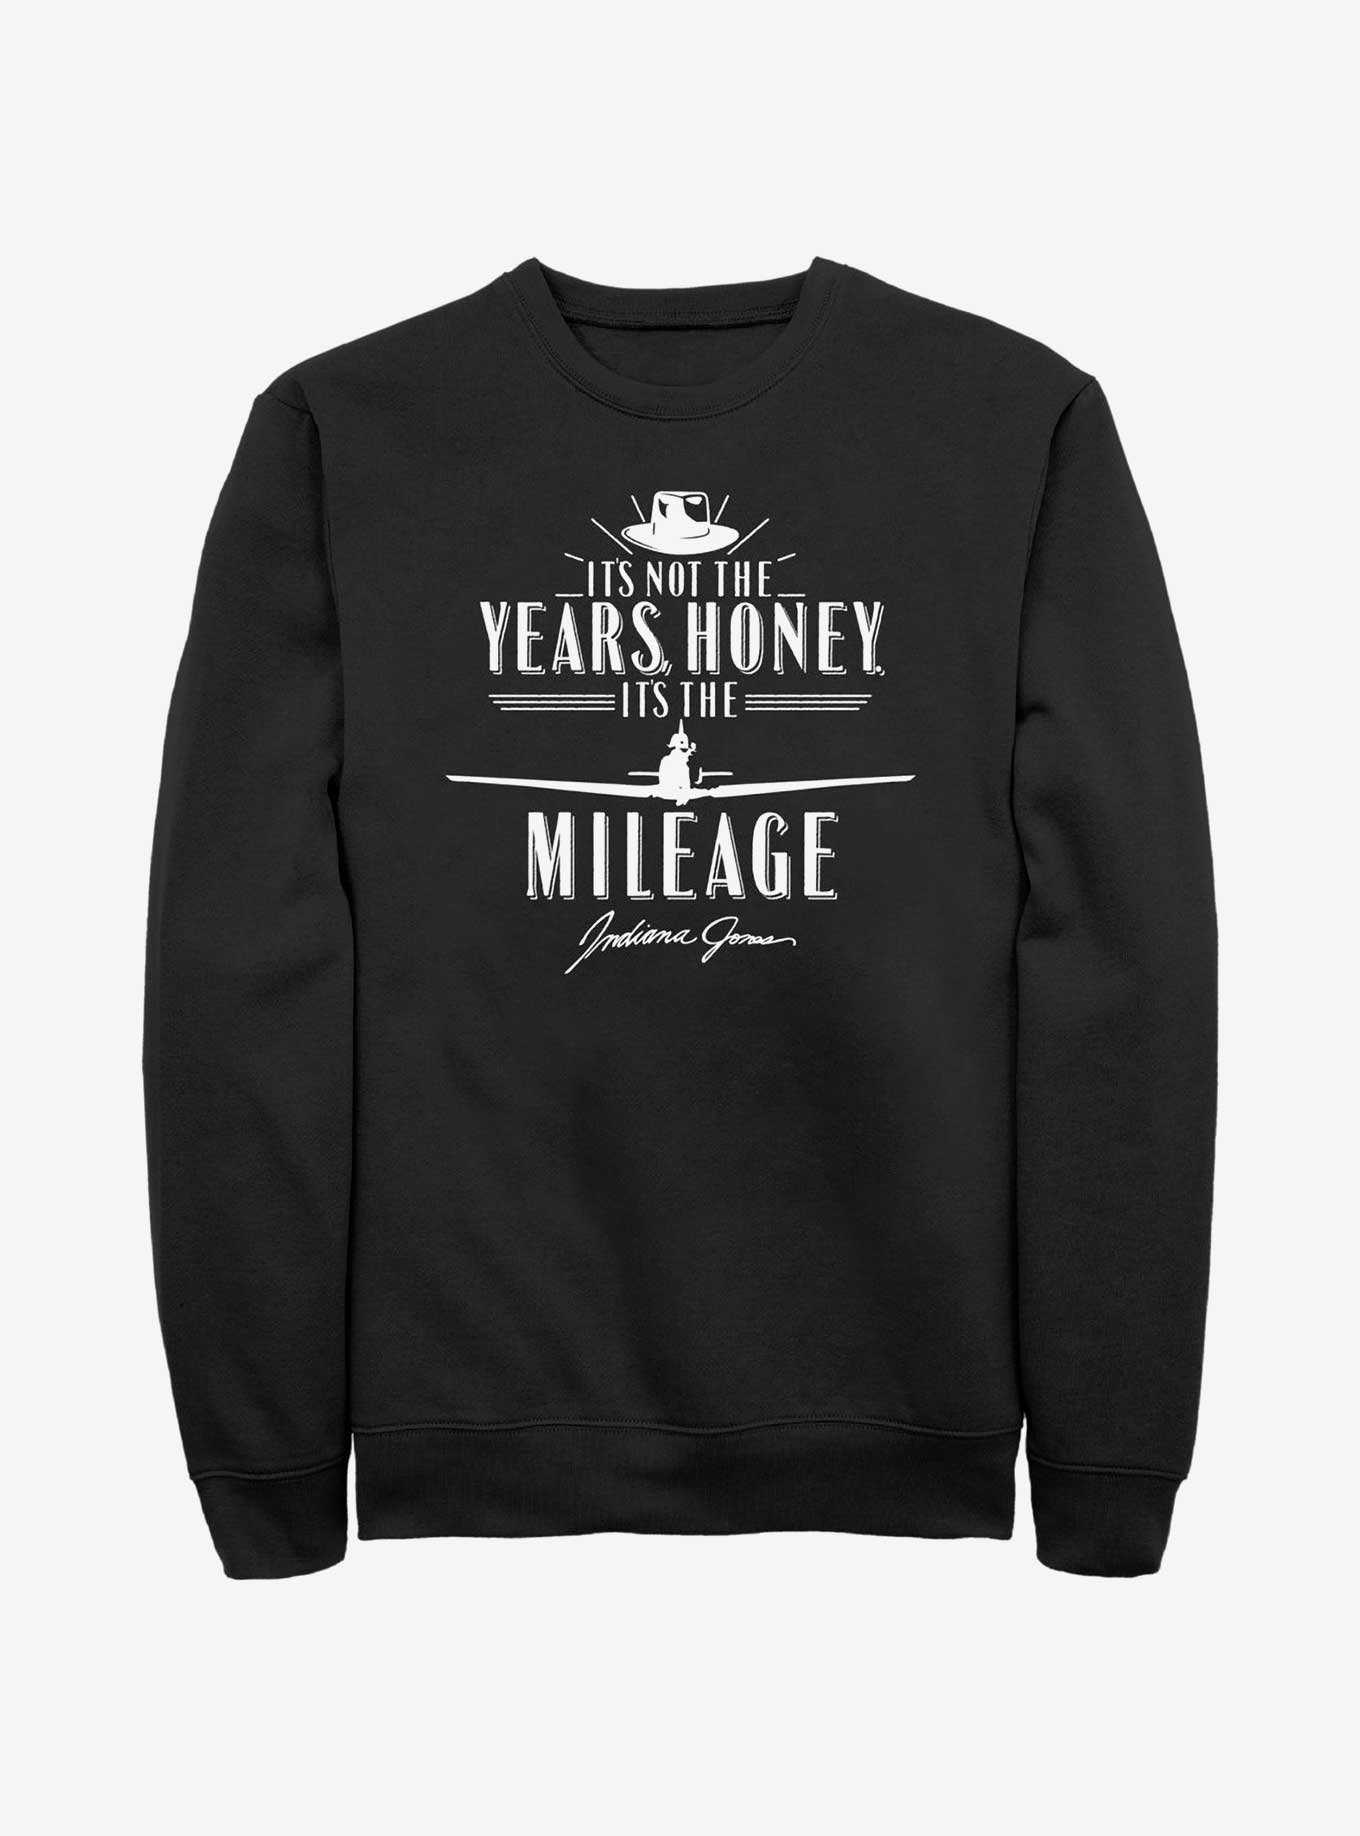 Indiana Jones It's The Mileage Sweatshirt, , hi-res